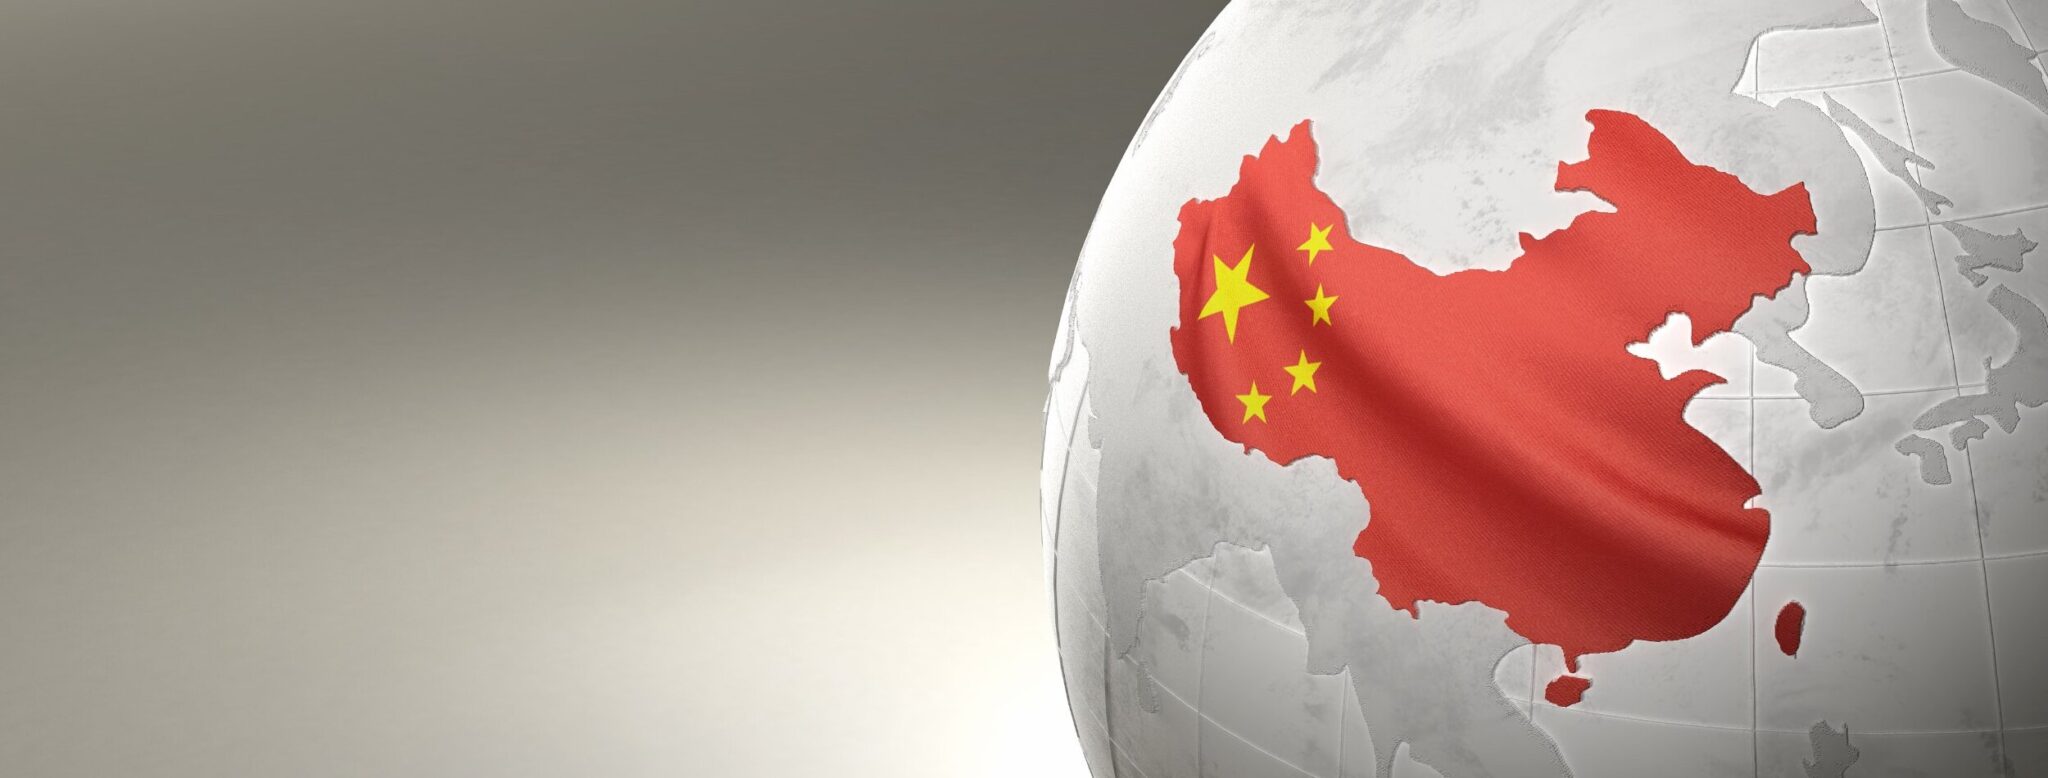 Κίνα: Τι περιμένουν οι αγορές από τις ετήσιες συγκεντρώσεις των στελεχών του κόμματος